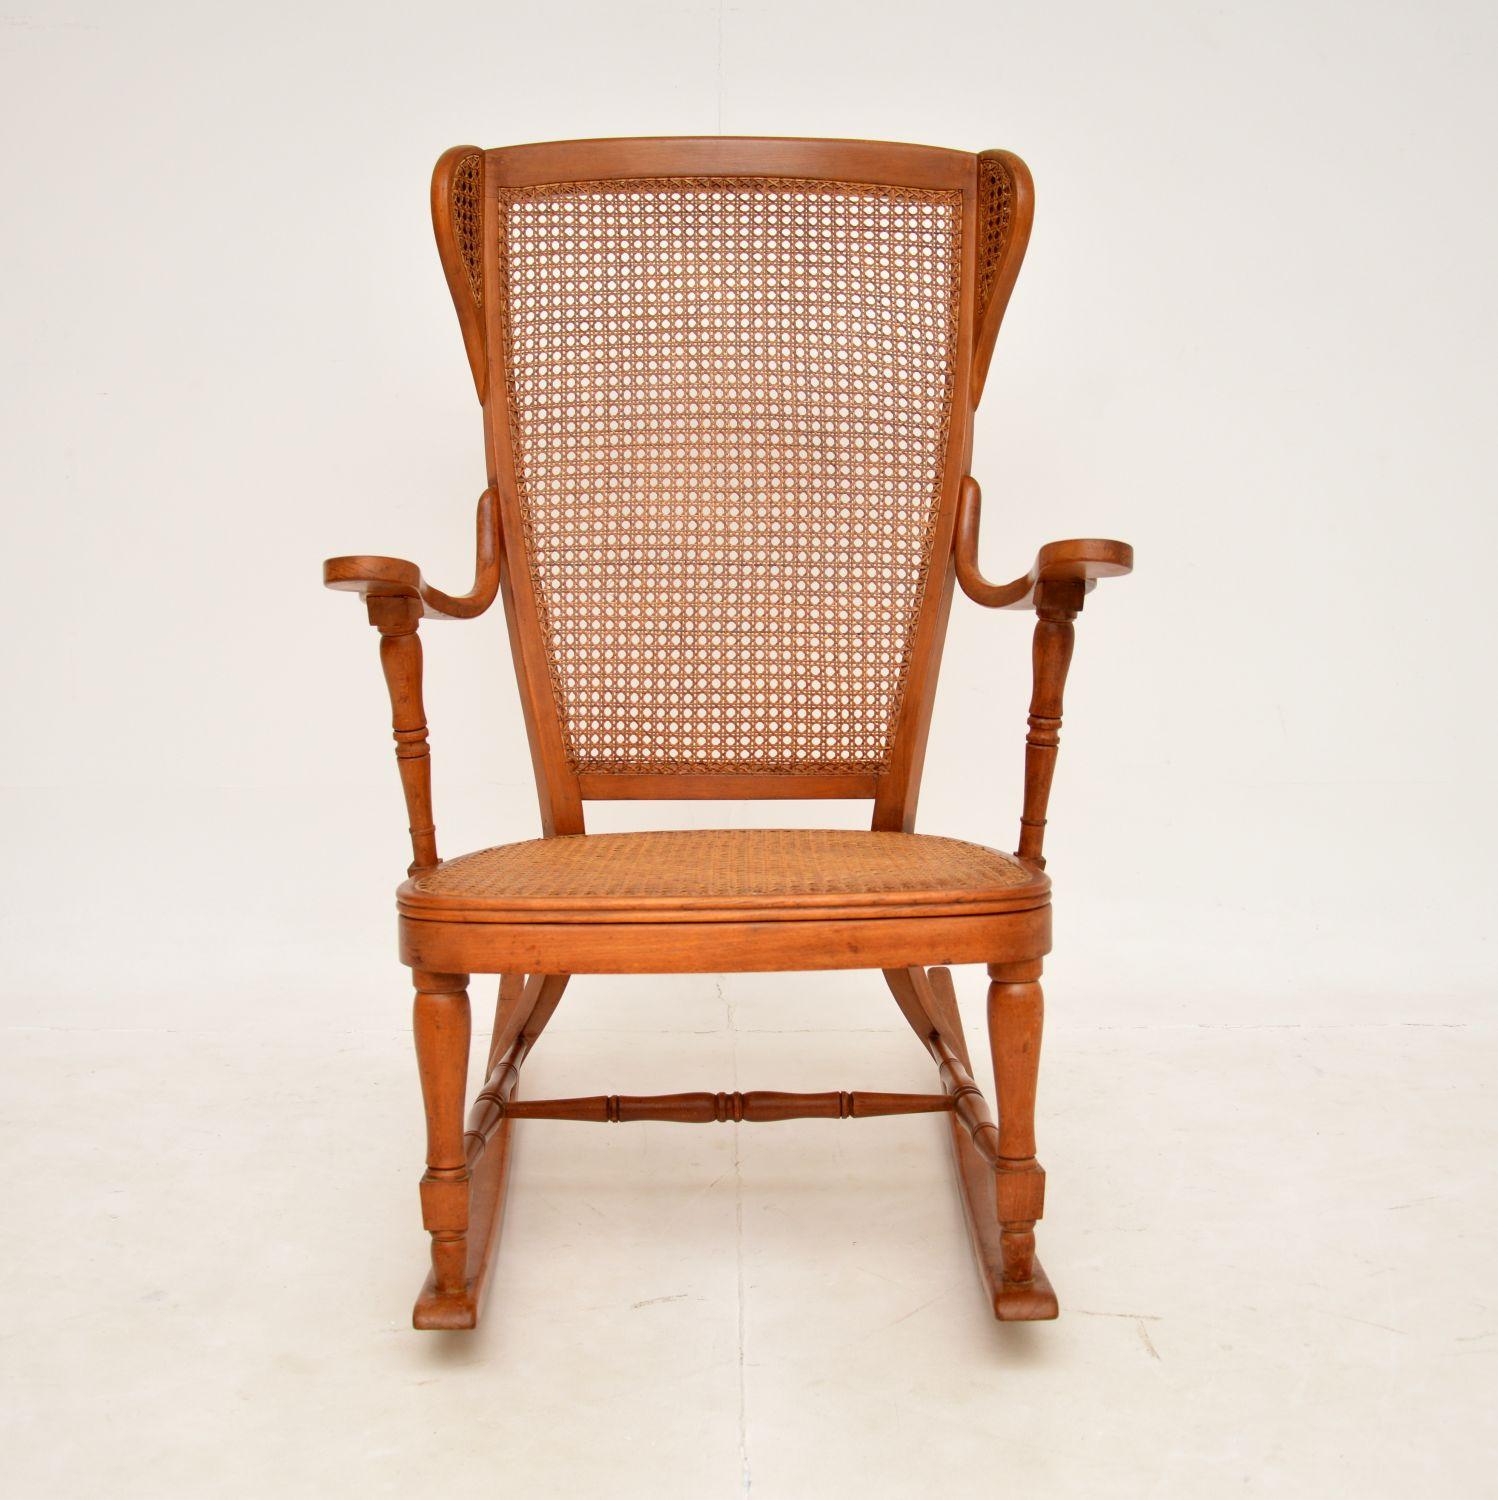 Ein schöner antiker Schaukelstuhl, der in Frankreich hergestellt wurde und aus der Zeit zwischen 1900 und 1920 stammt.

Der Rahmen ist eine Kombination aus gedrechseltem und dampfgebogenem Massivholz. Die Sitzfläche und die Rückenlehne sind